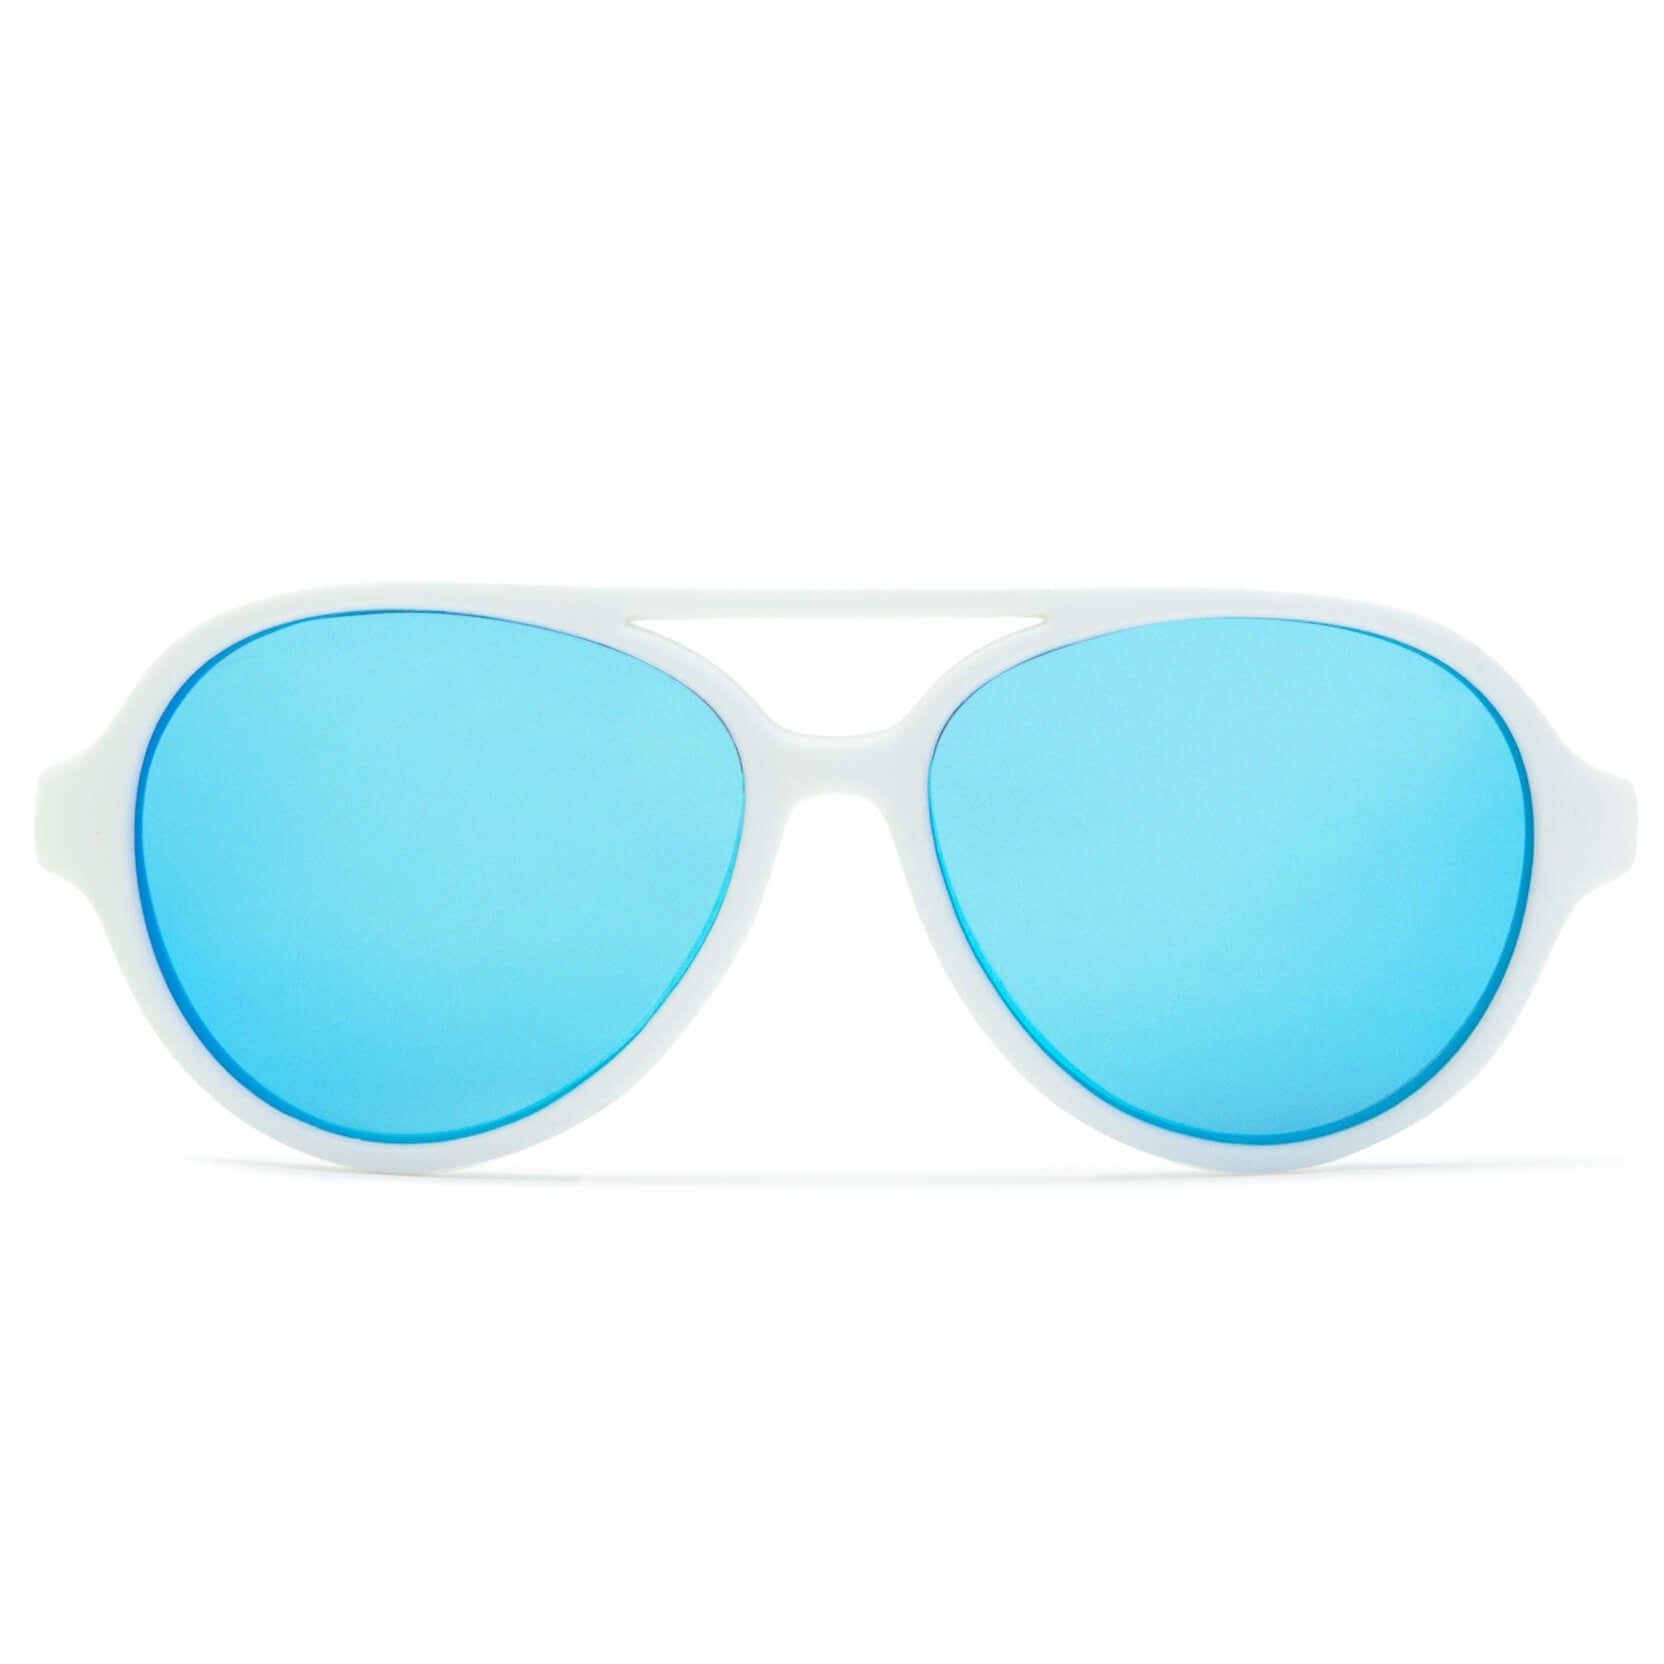 Apollo White Sunglasses